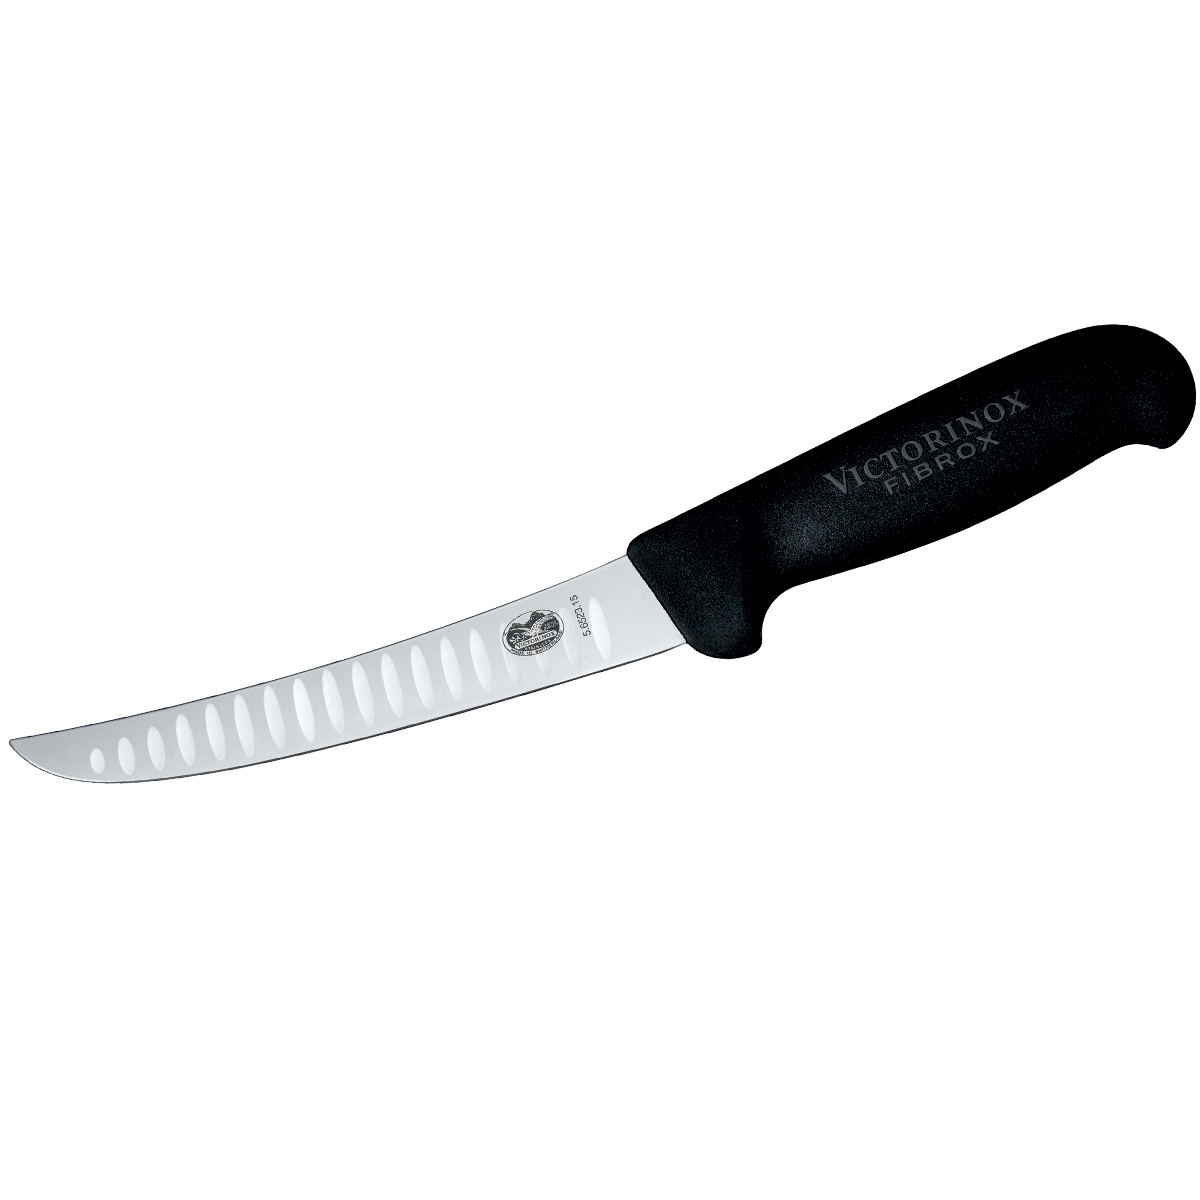 Victorinox Boning Knife, 15cm (6) - Curved, Fluted Blade - Black